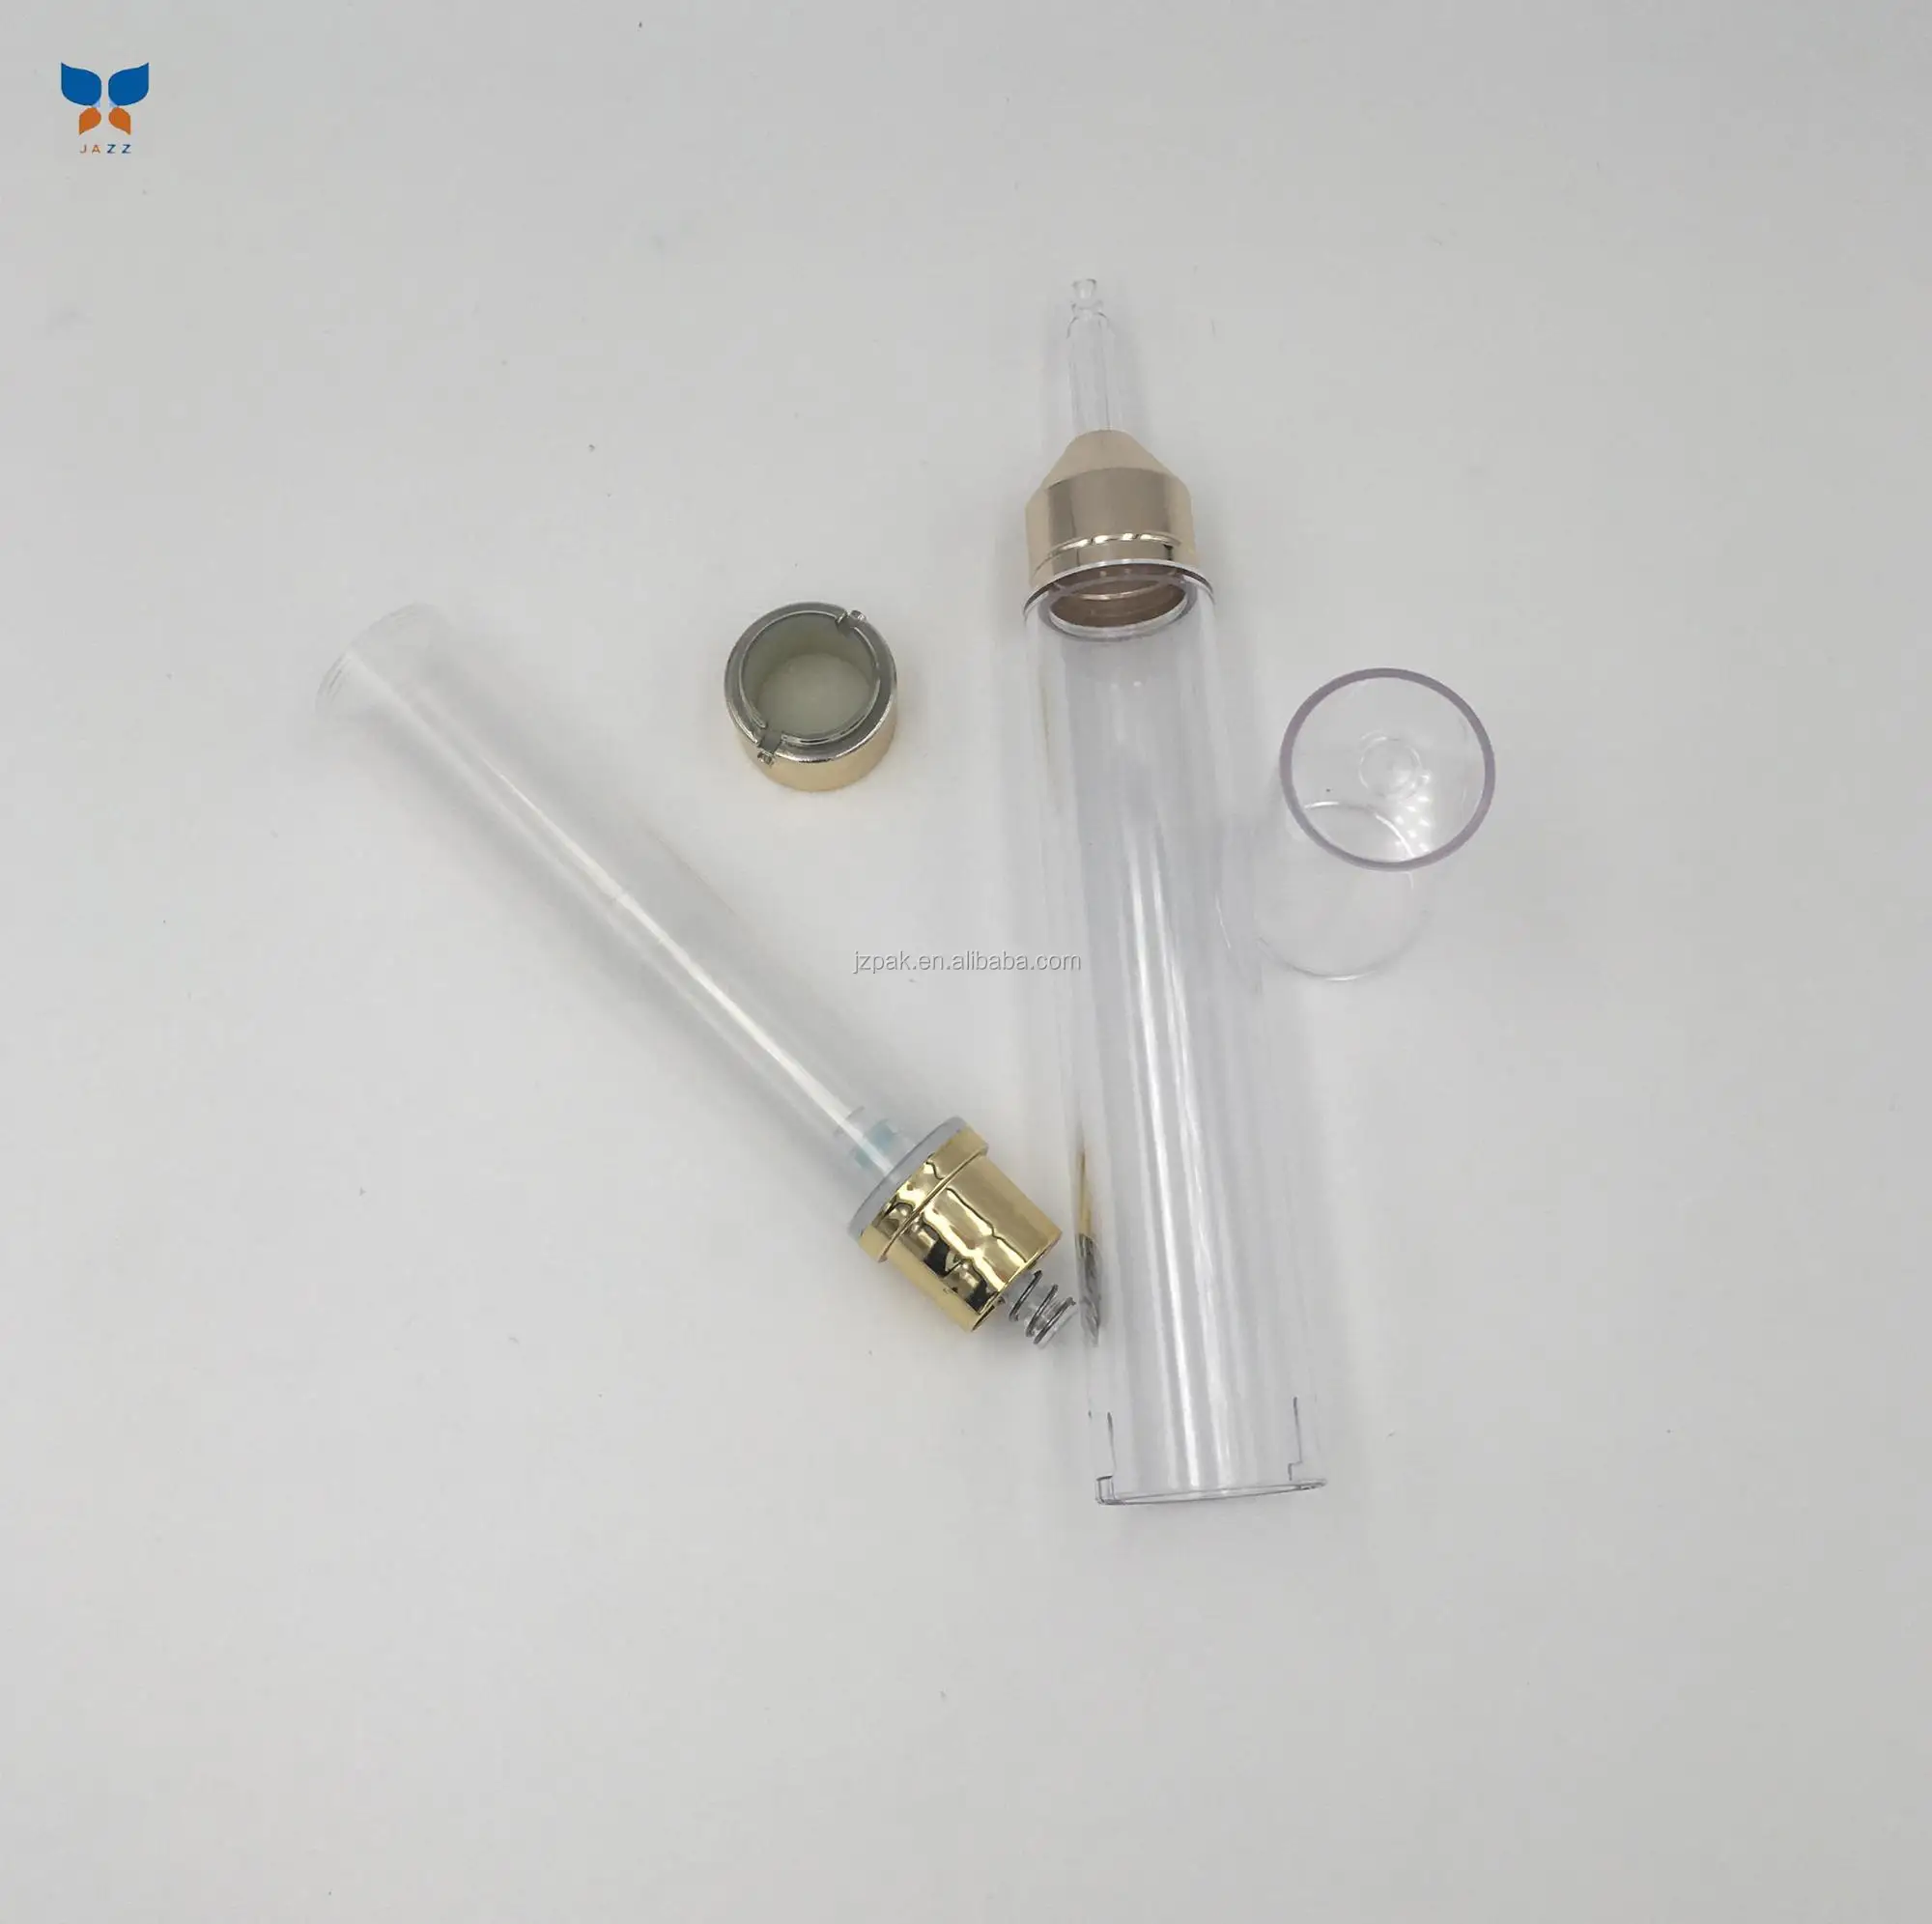 Jazz 15ml new design2018 syringe shape airless bottle for eye cream injection bottle